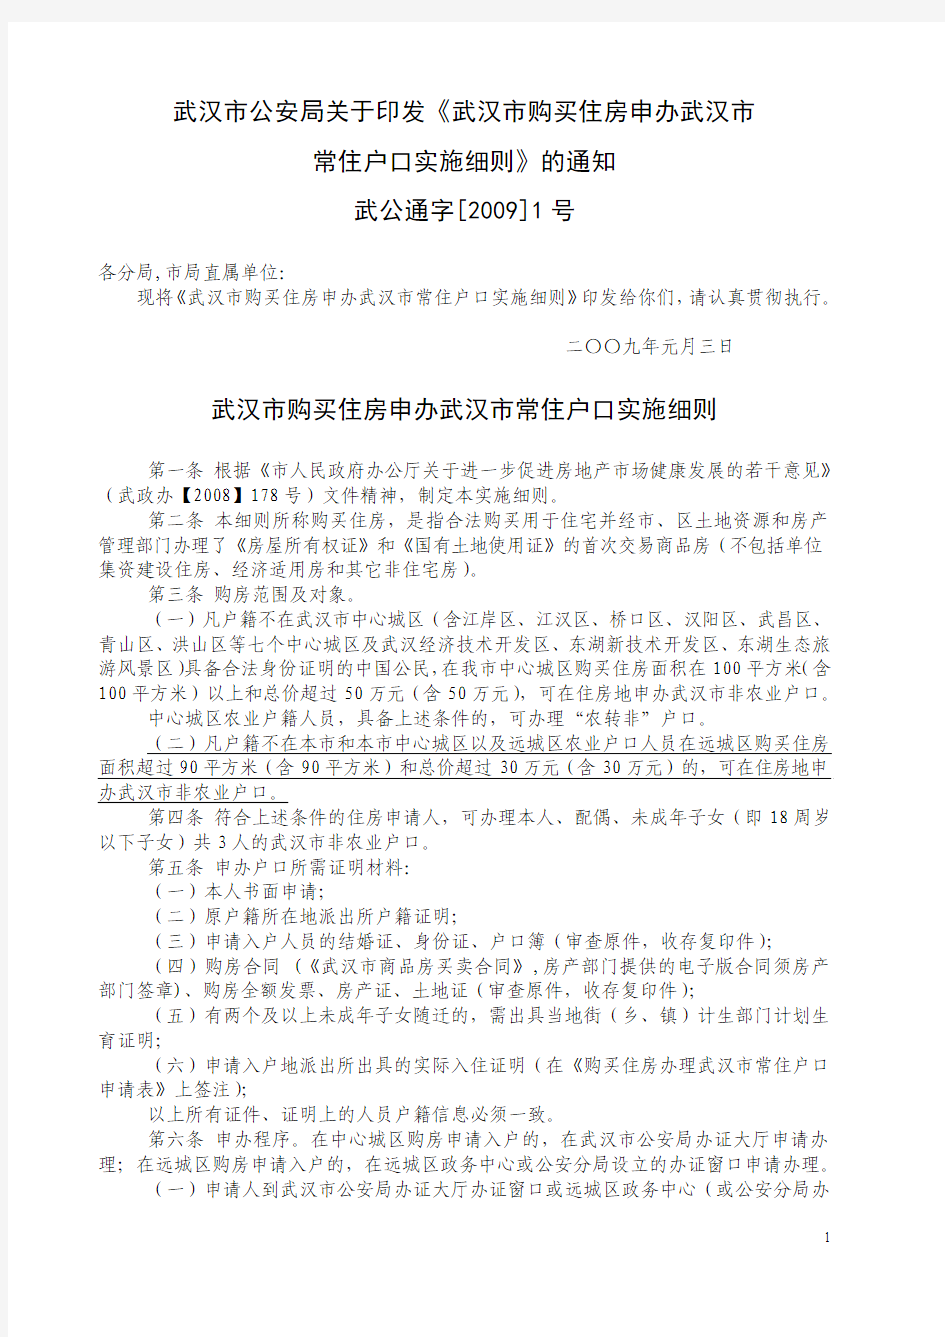 武汉市公安局关于印发《武汉市购买住房申办武汉市